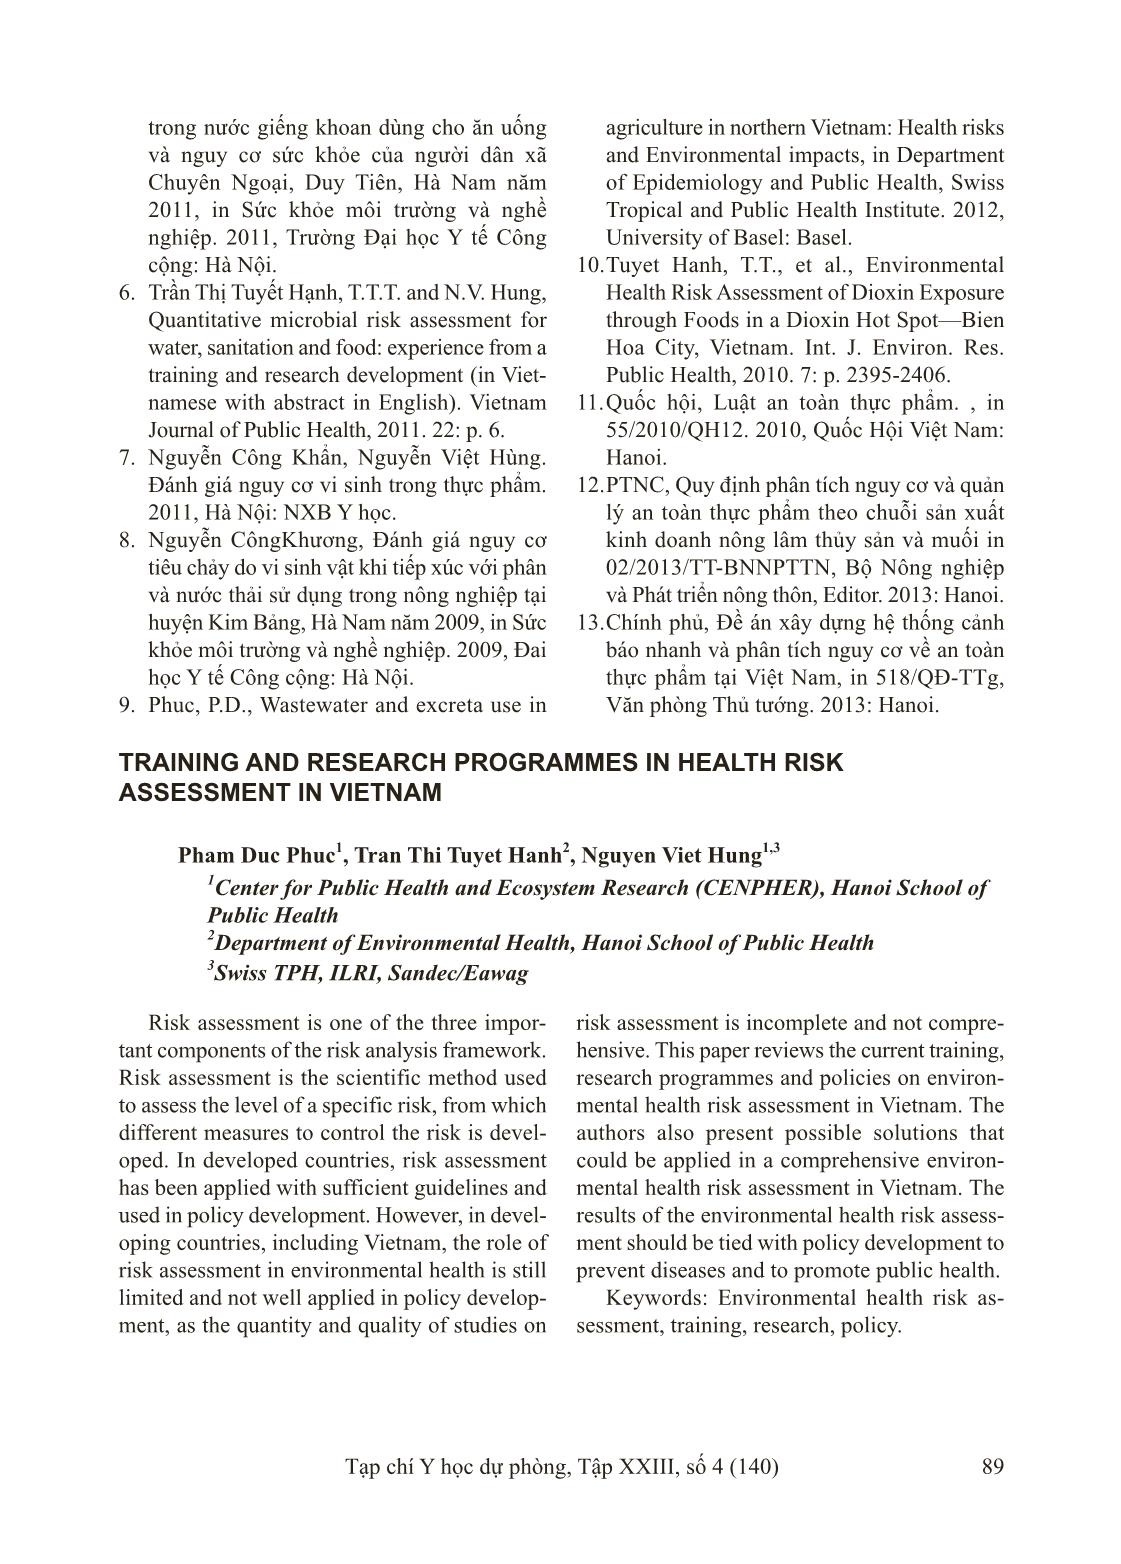 Đào tạo và nghiên cứu về đánh giá nguy cơ sức khỏe ở Việt Nam trang 7